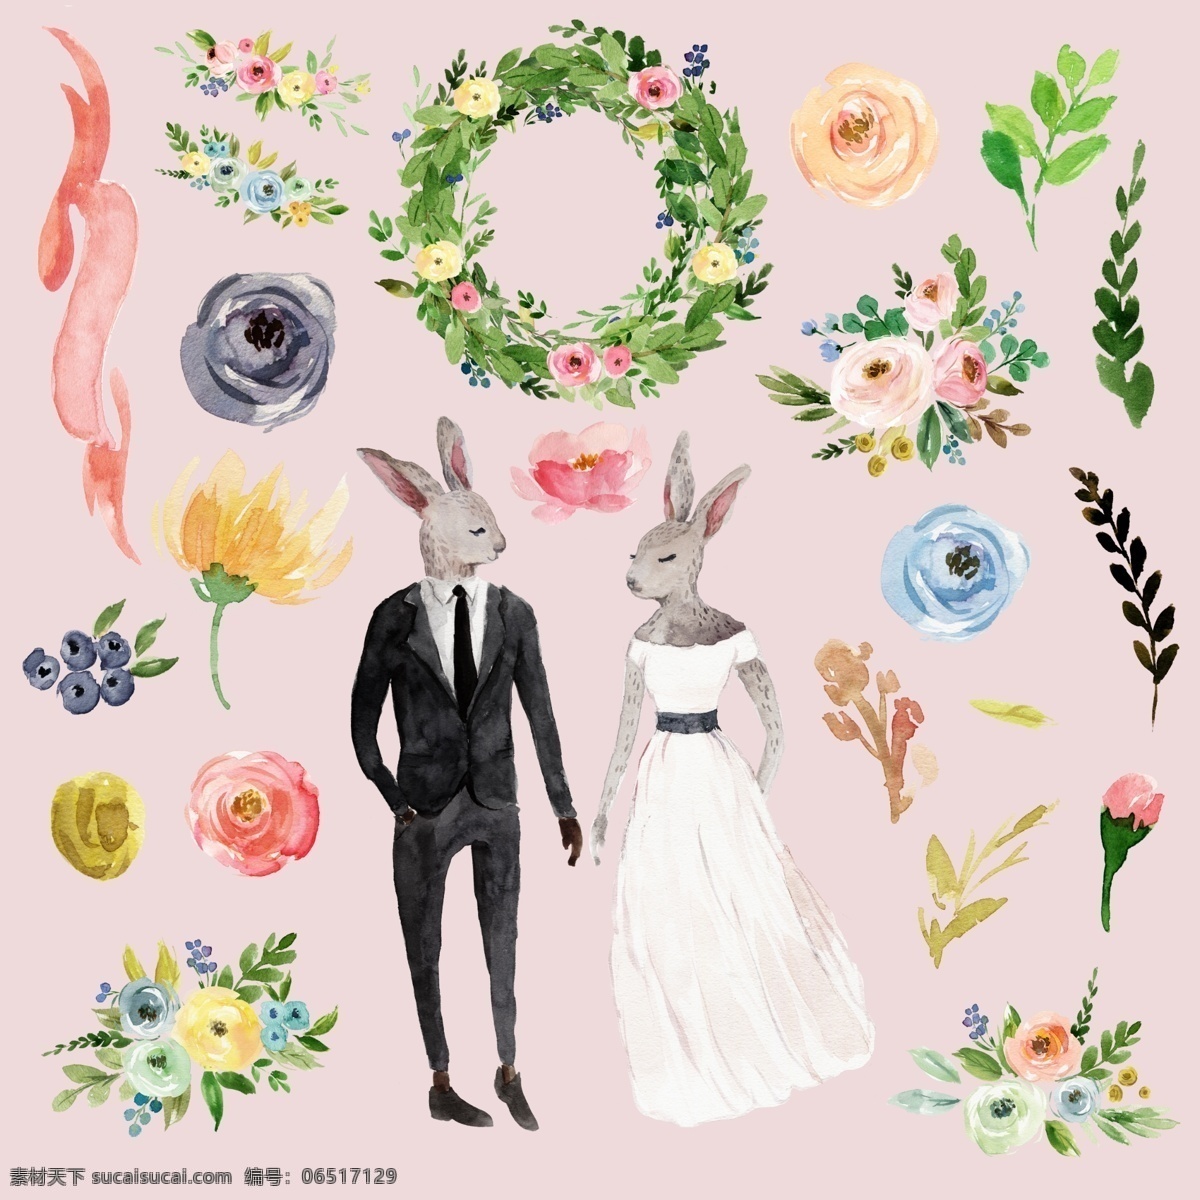 兔子婚礼插画 兔子 婚礼 结婚 婚纱 新娘 花朵 草 清新 插画 水彩 可爱